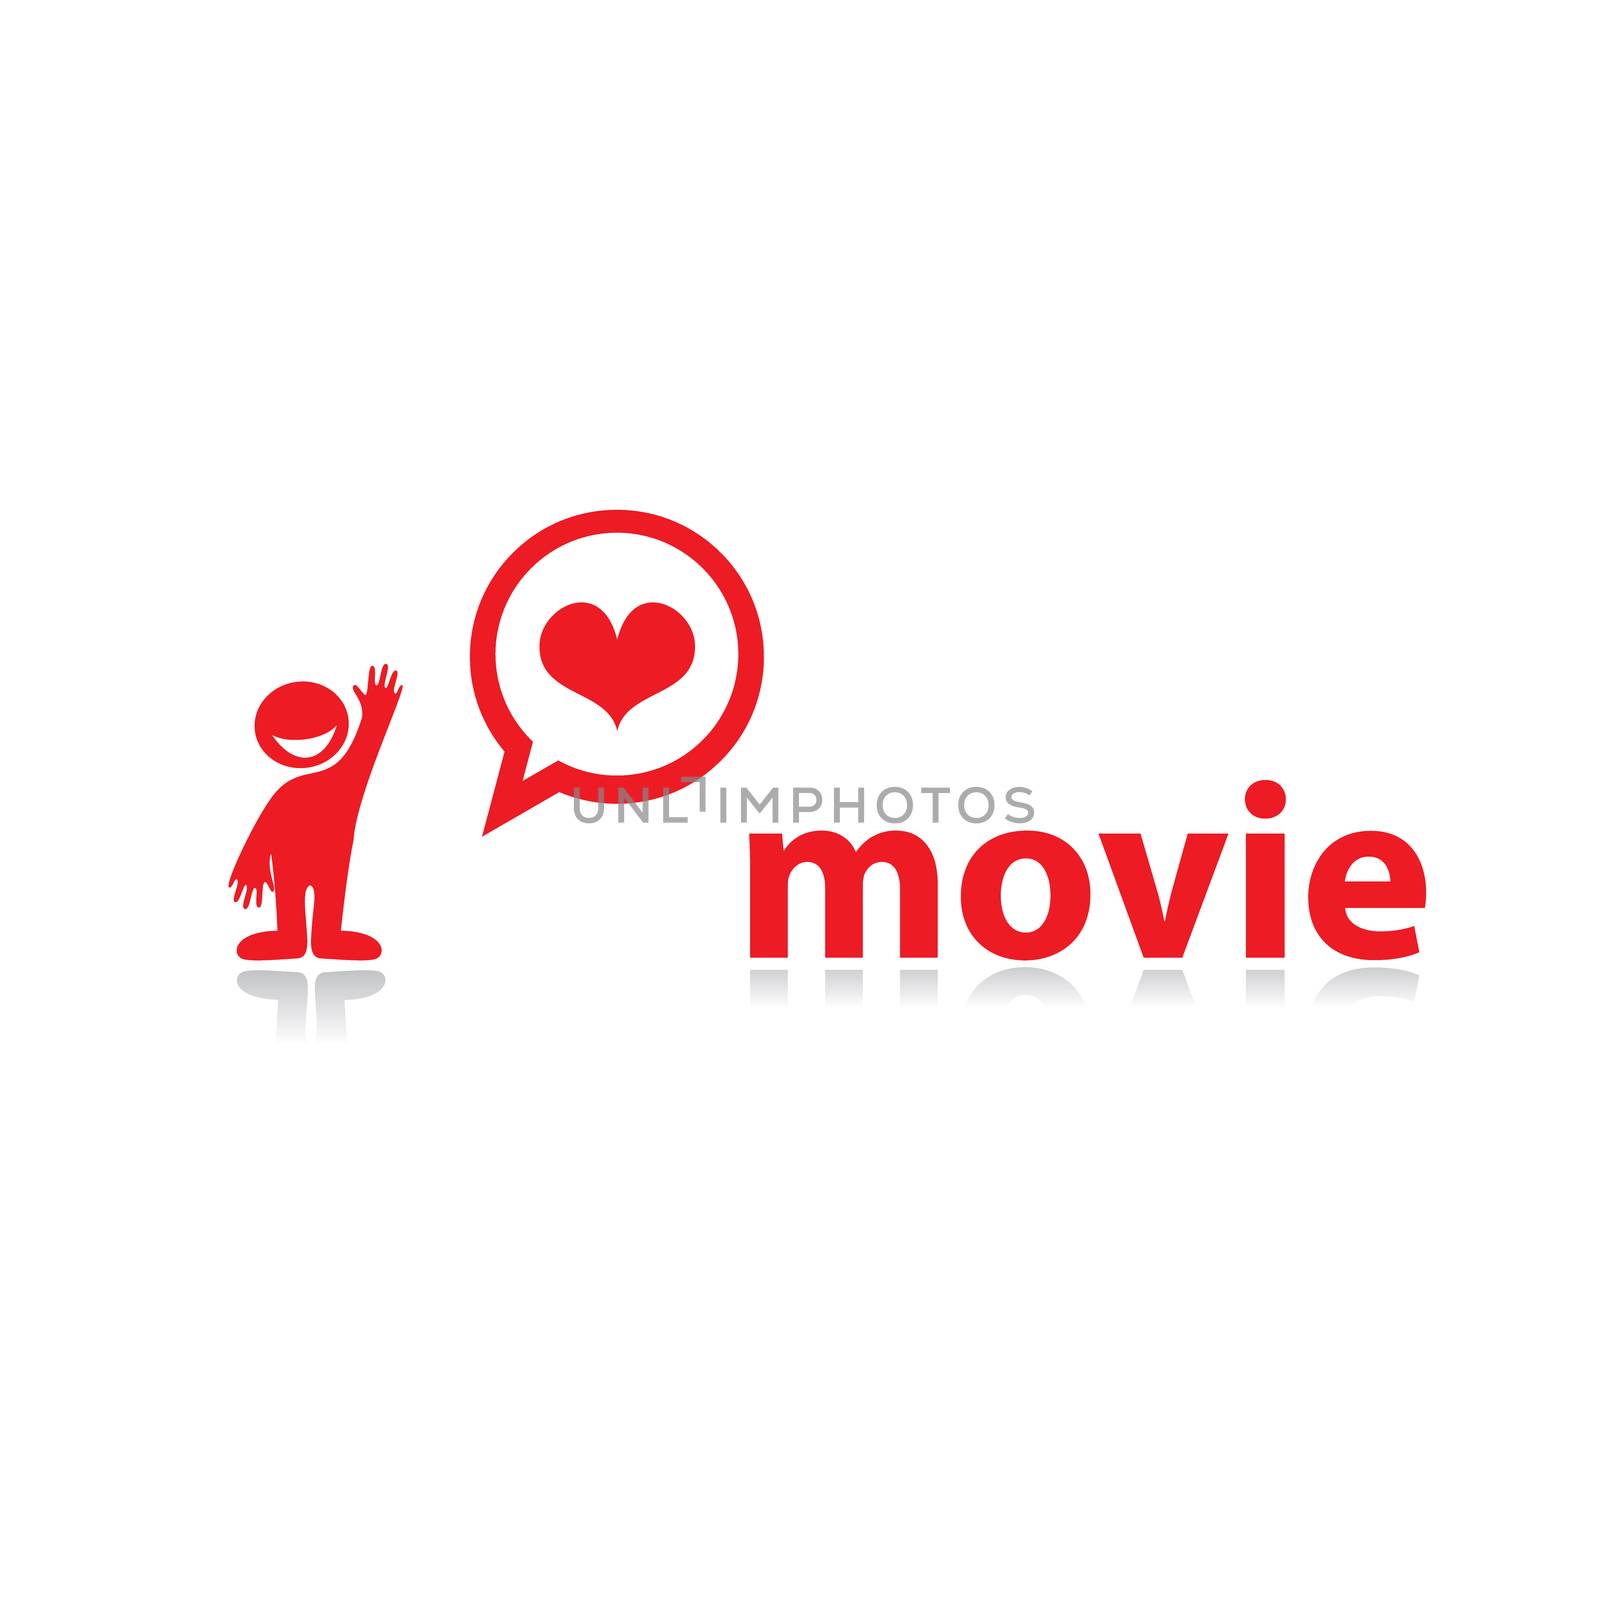 I-love-movie by antoshkaforever